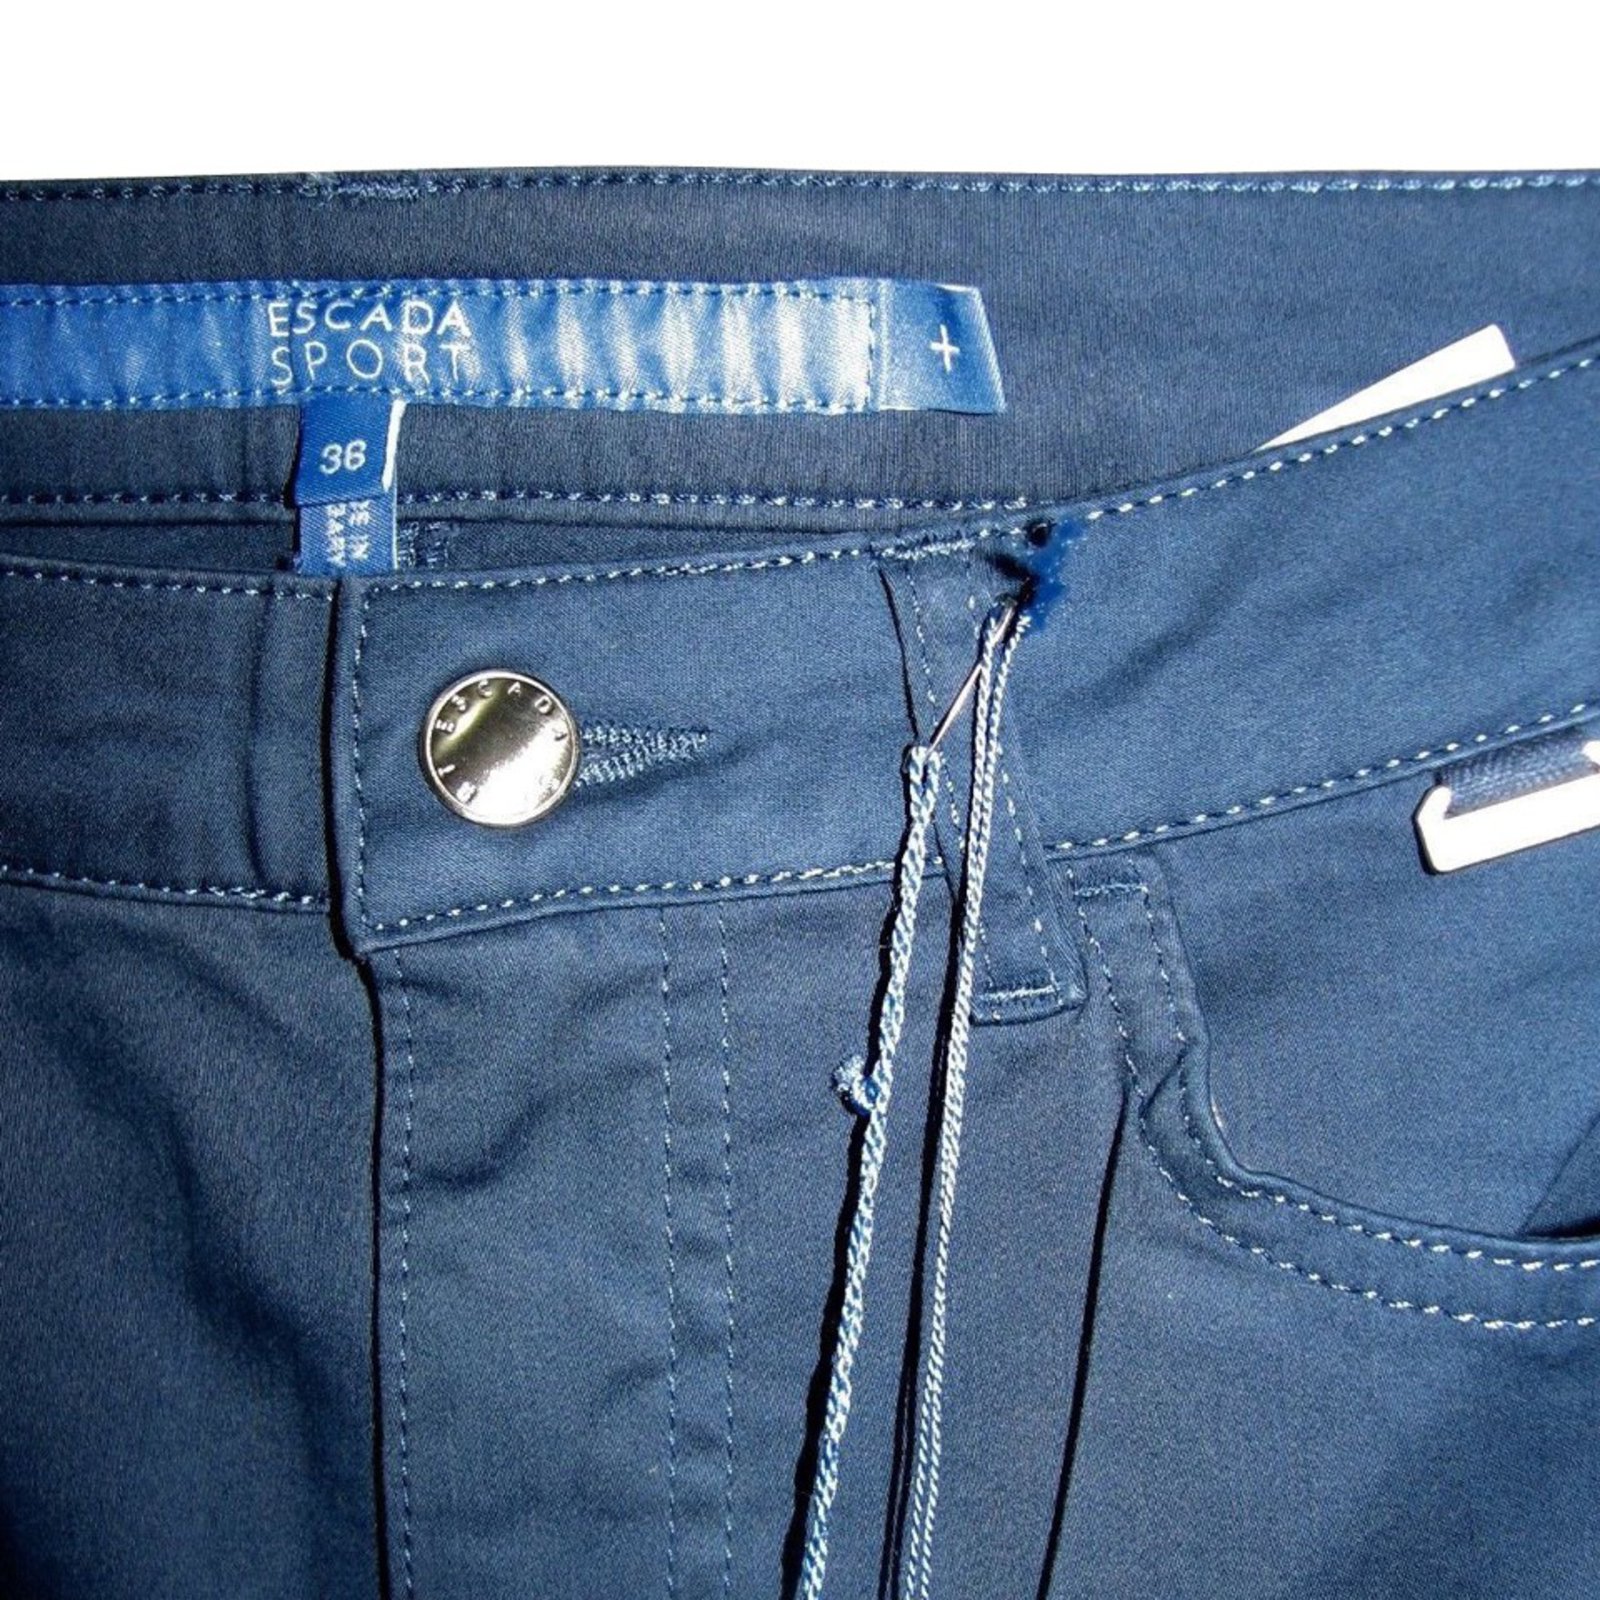 ESCADA Sport Women Blue Jeans Pants Small Size 